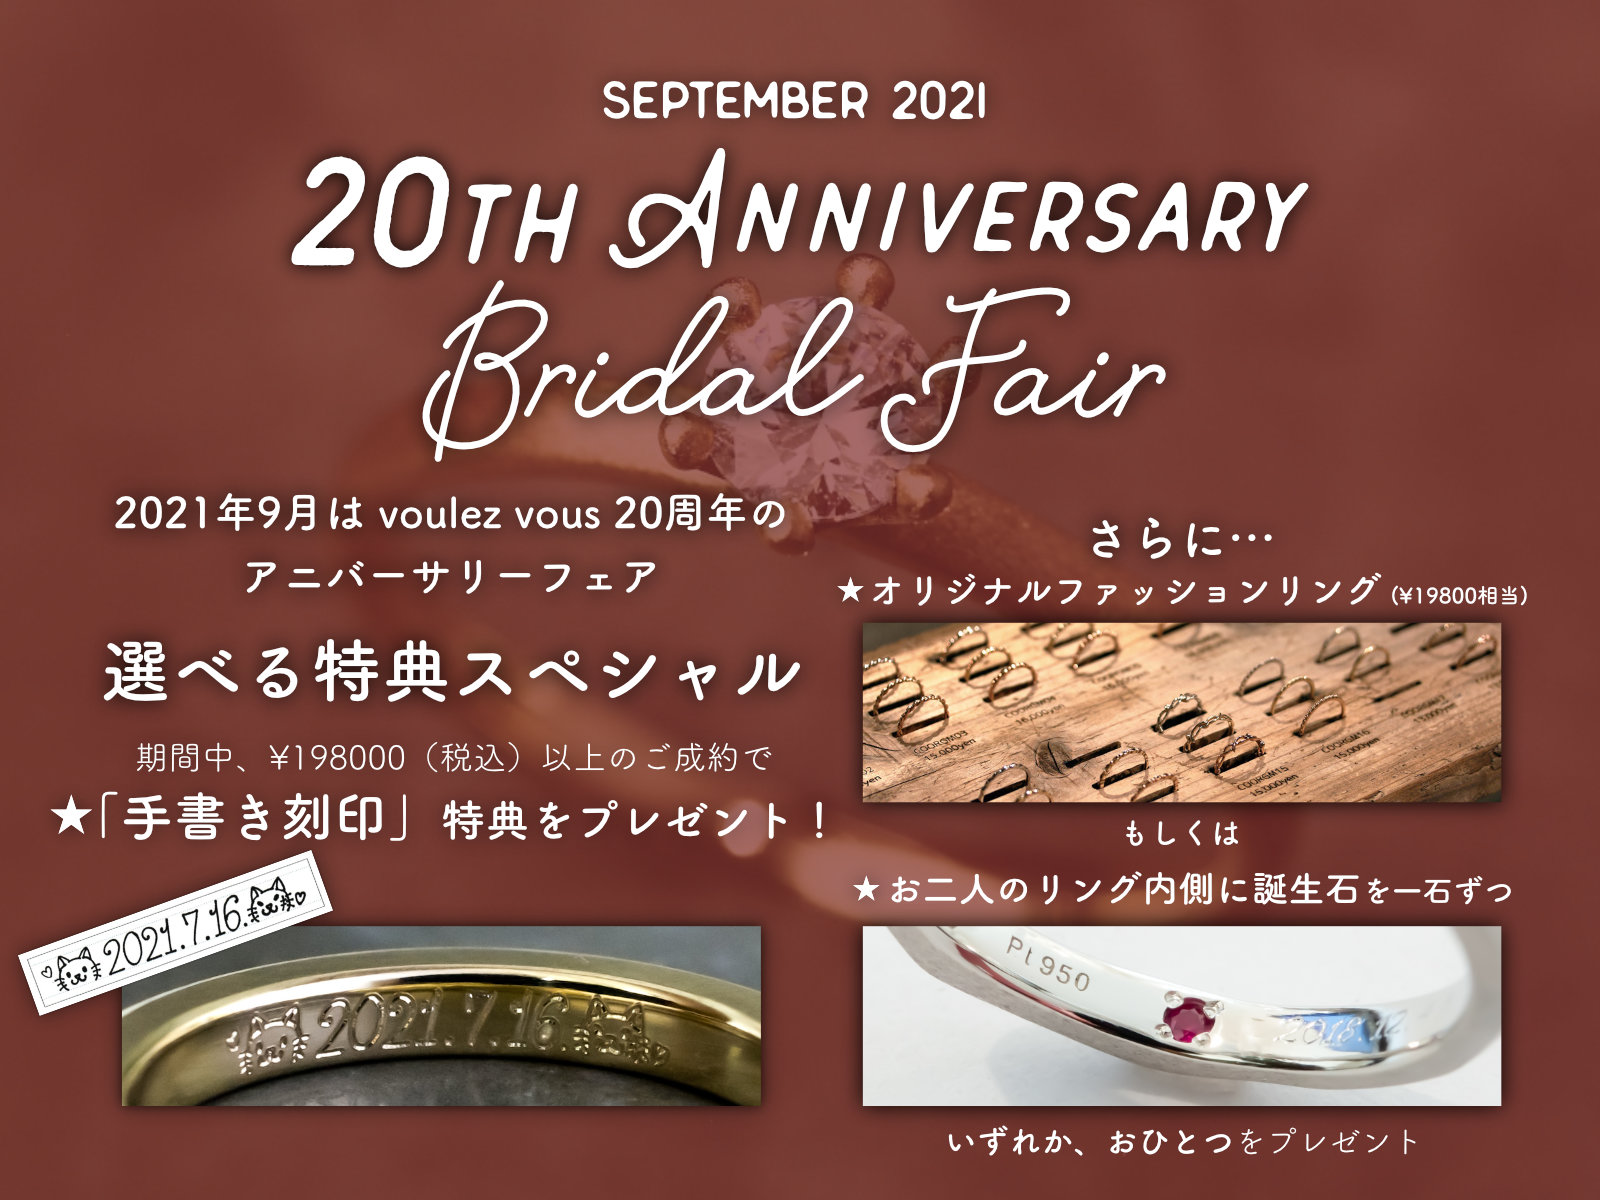 20th anniversary bridal fair